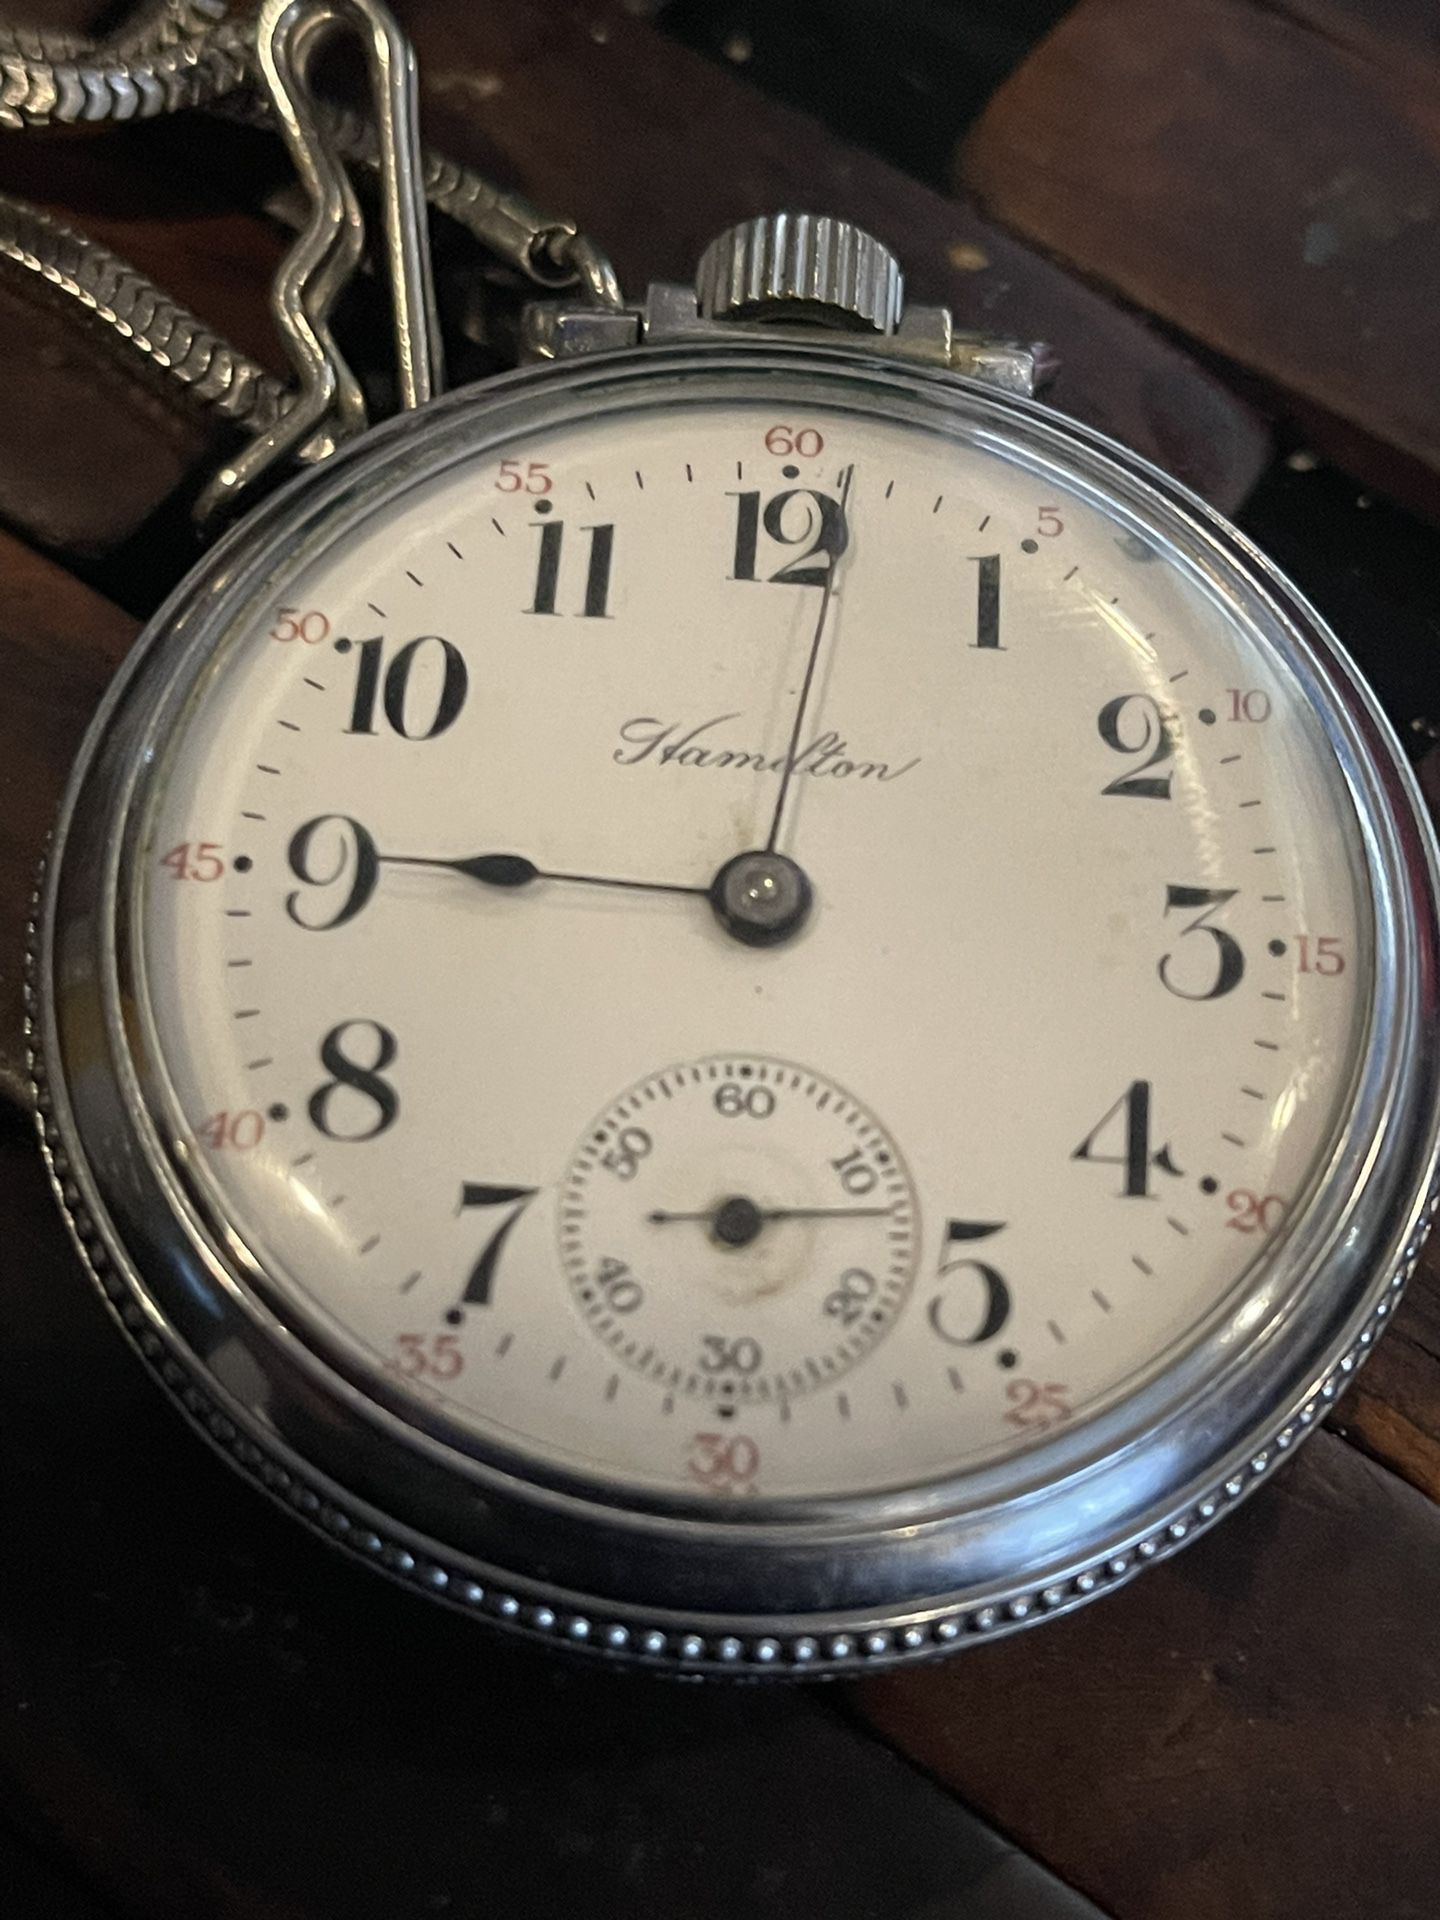 Excellent condition 1911 Hamilton pocket watch